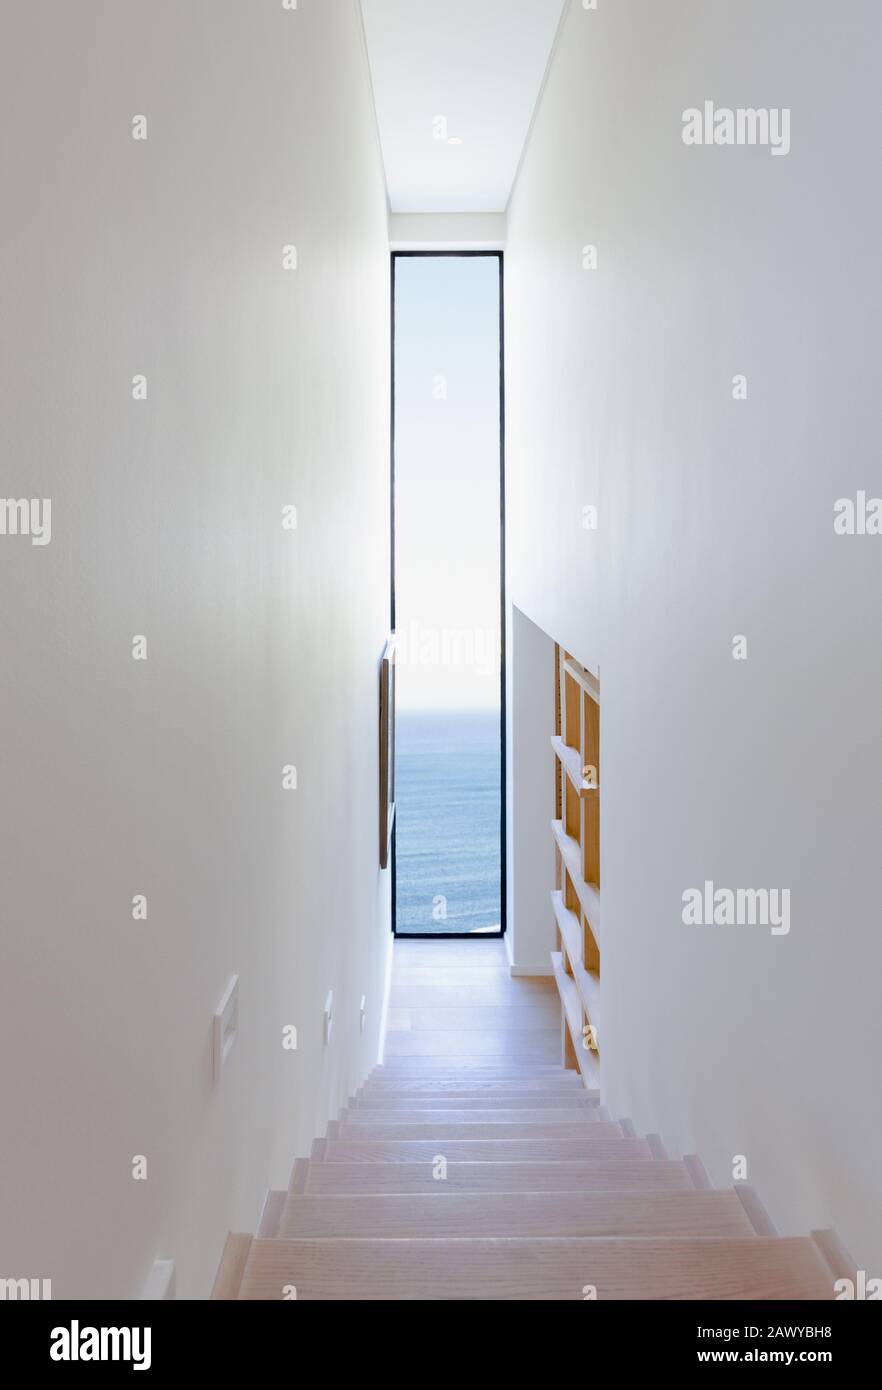 Treppenhaus mit Blick auf das lange Fenster und Meerblick im modernen, luxuriösen Home Showcase Interieur Stockfoto